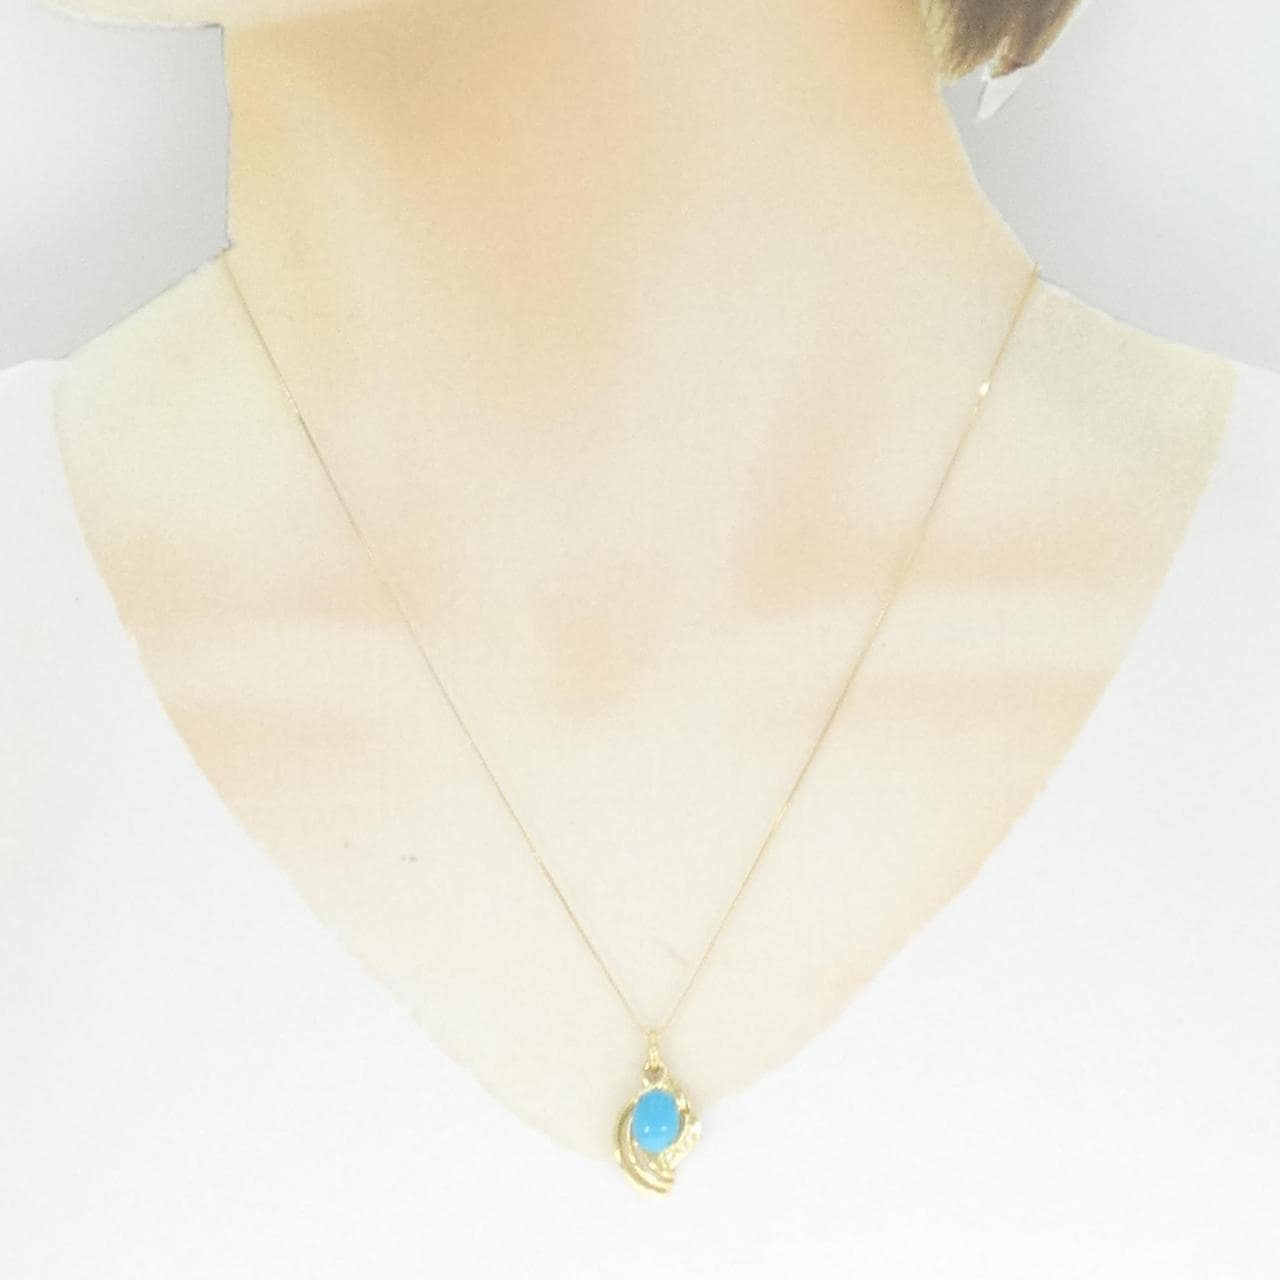 K18YG turquoise necklace